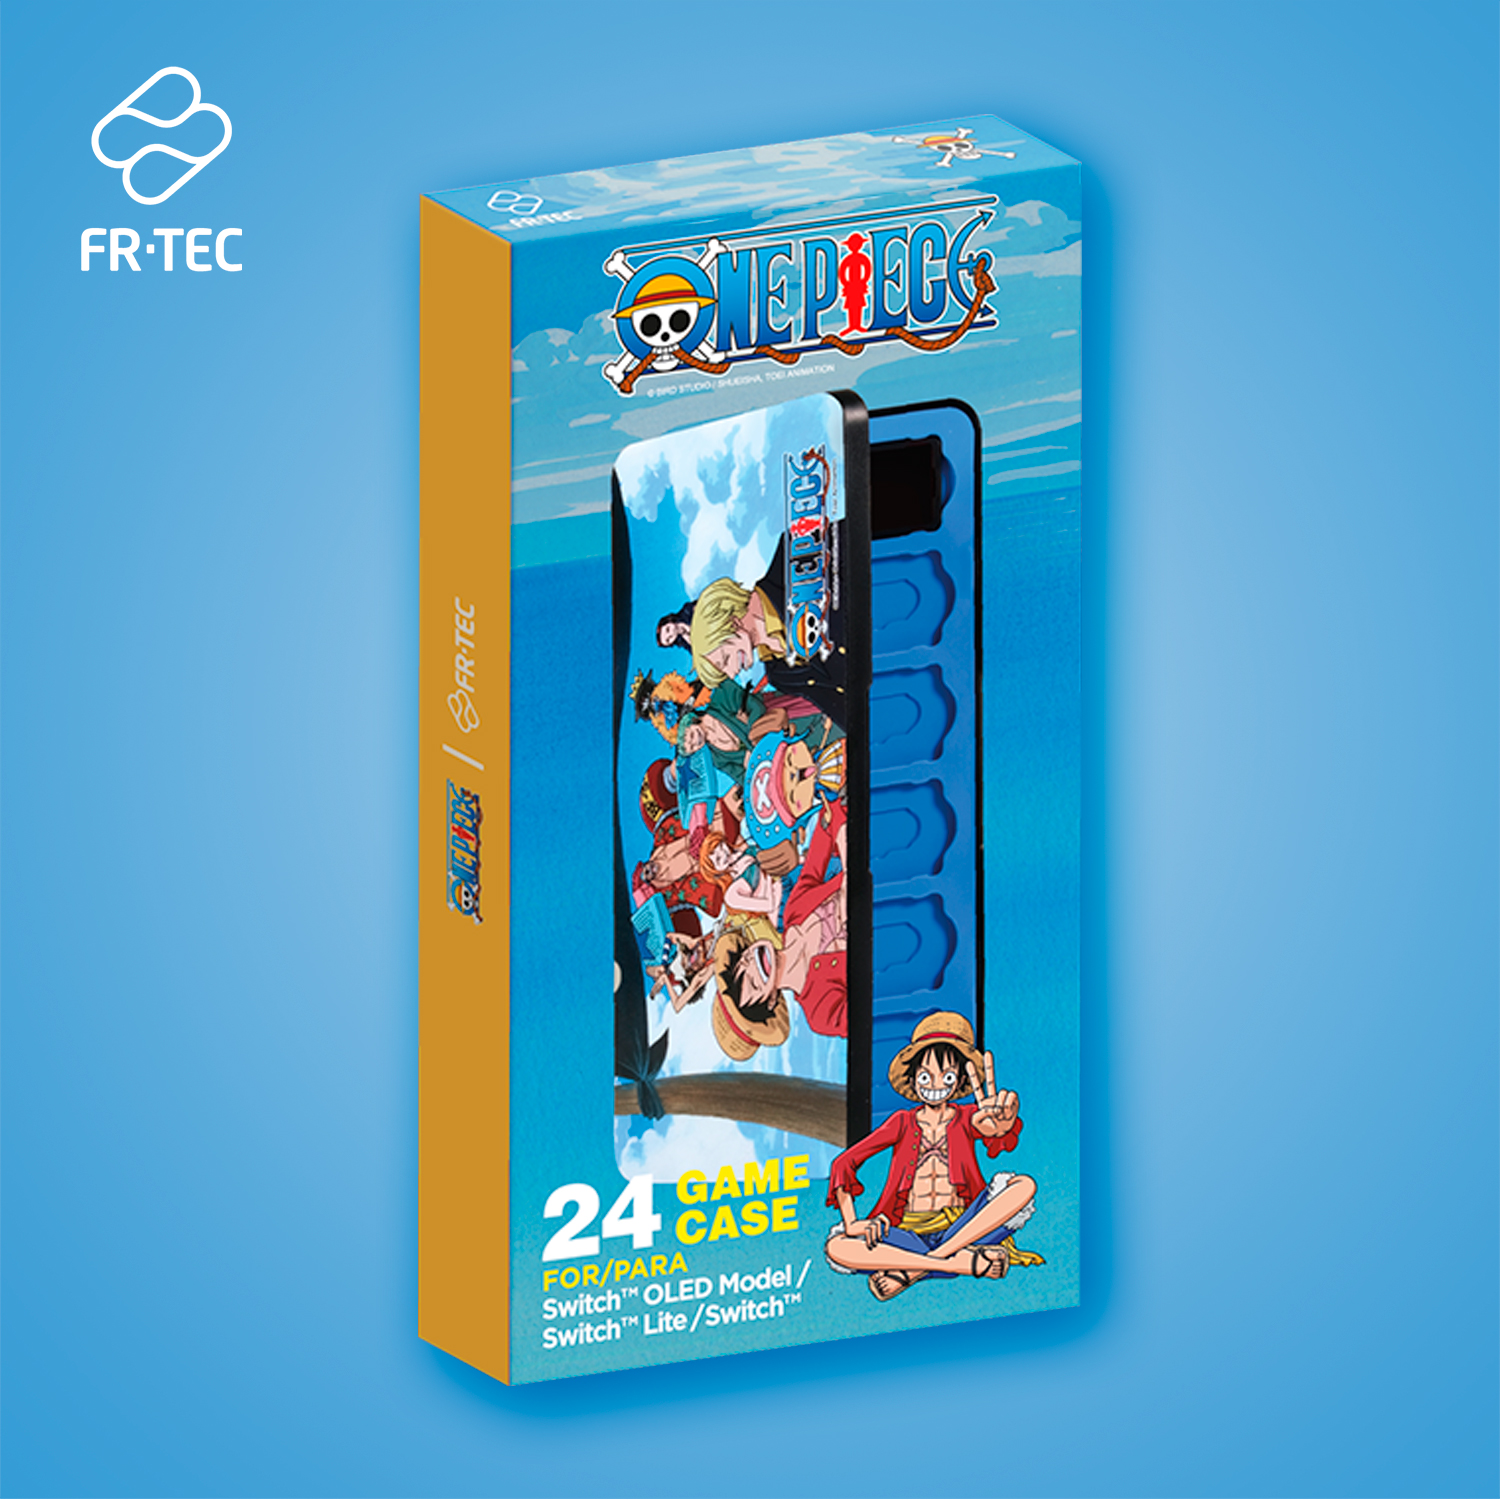 Boîte FR-TEC One Piece avec capacité pour 24 cartes de jeu Nintendo Switch